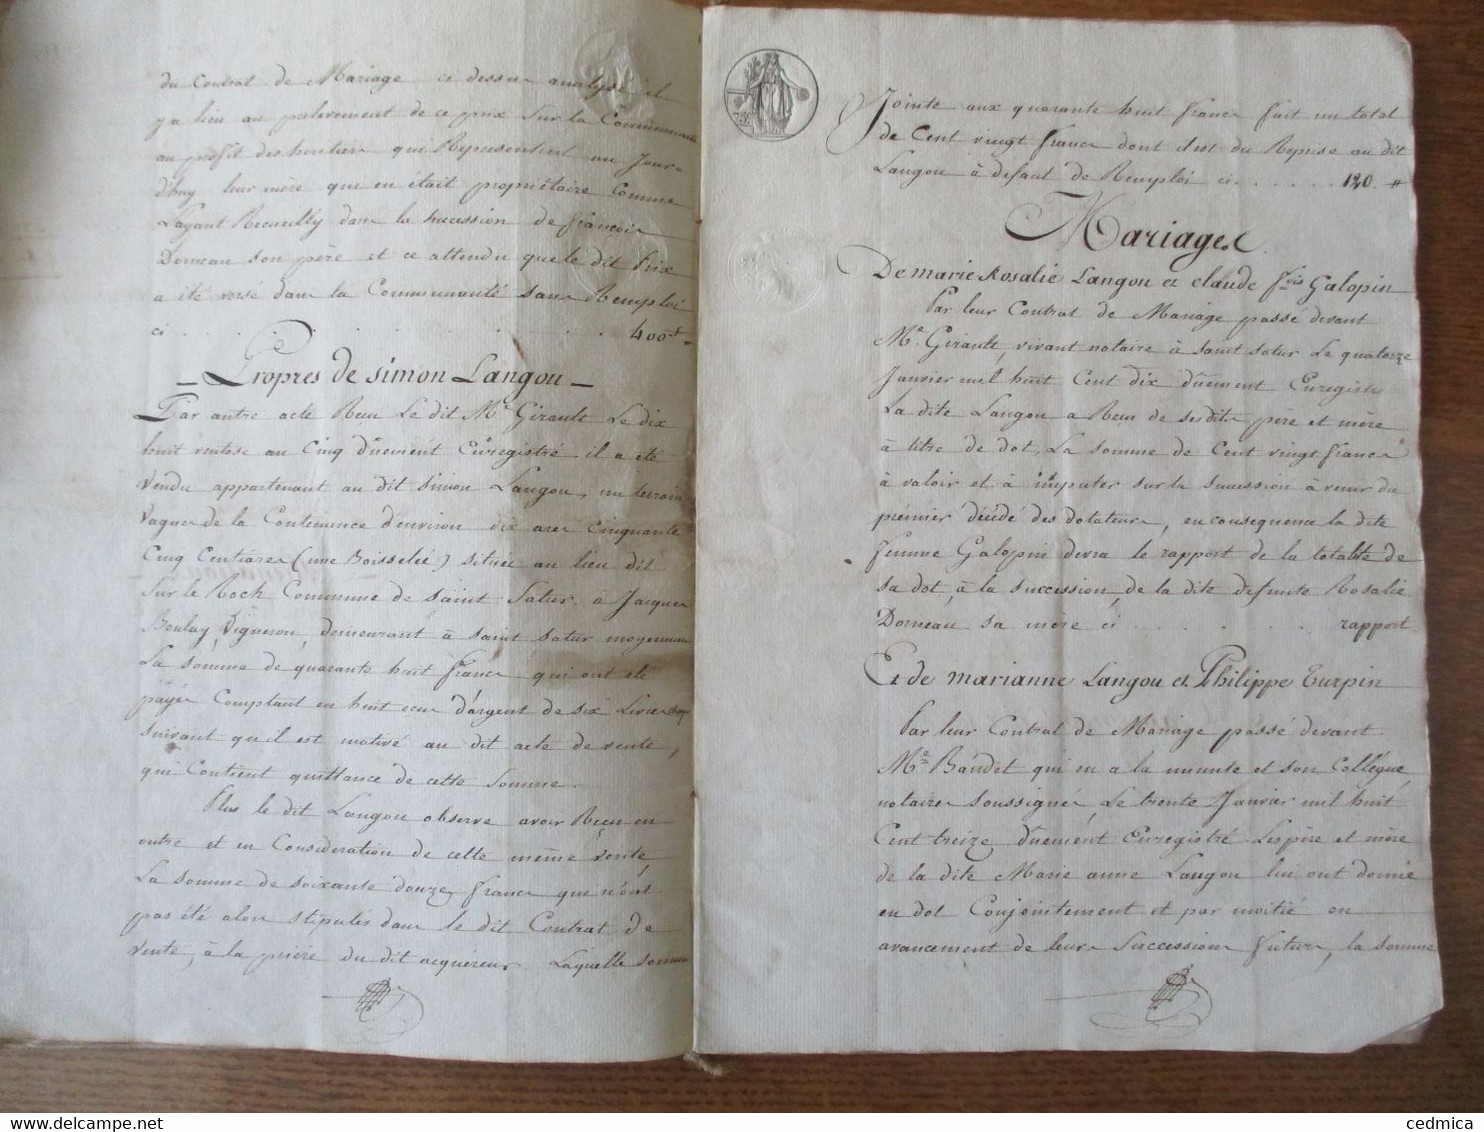 11 MARS 1815 SAINT SATUR LIQUIDATION DECES DE ROSALIE DORNEAU EPOUSE DE SIMON LANGOU,SCELLES INVENTAIRE,CONTRAT DE MARIA - Manuskripte